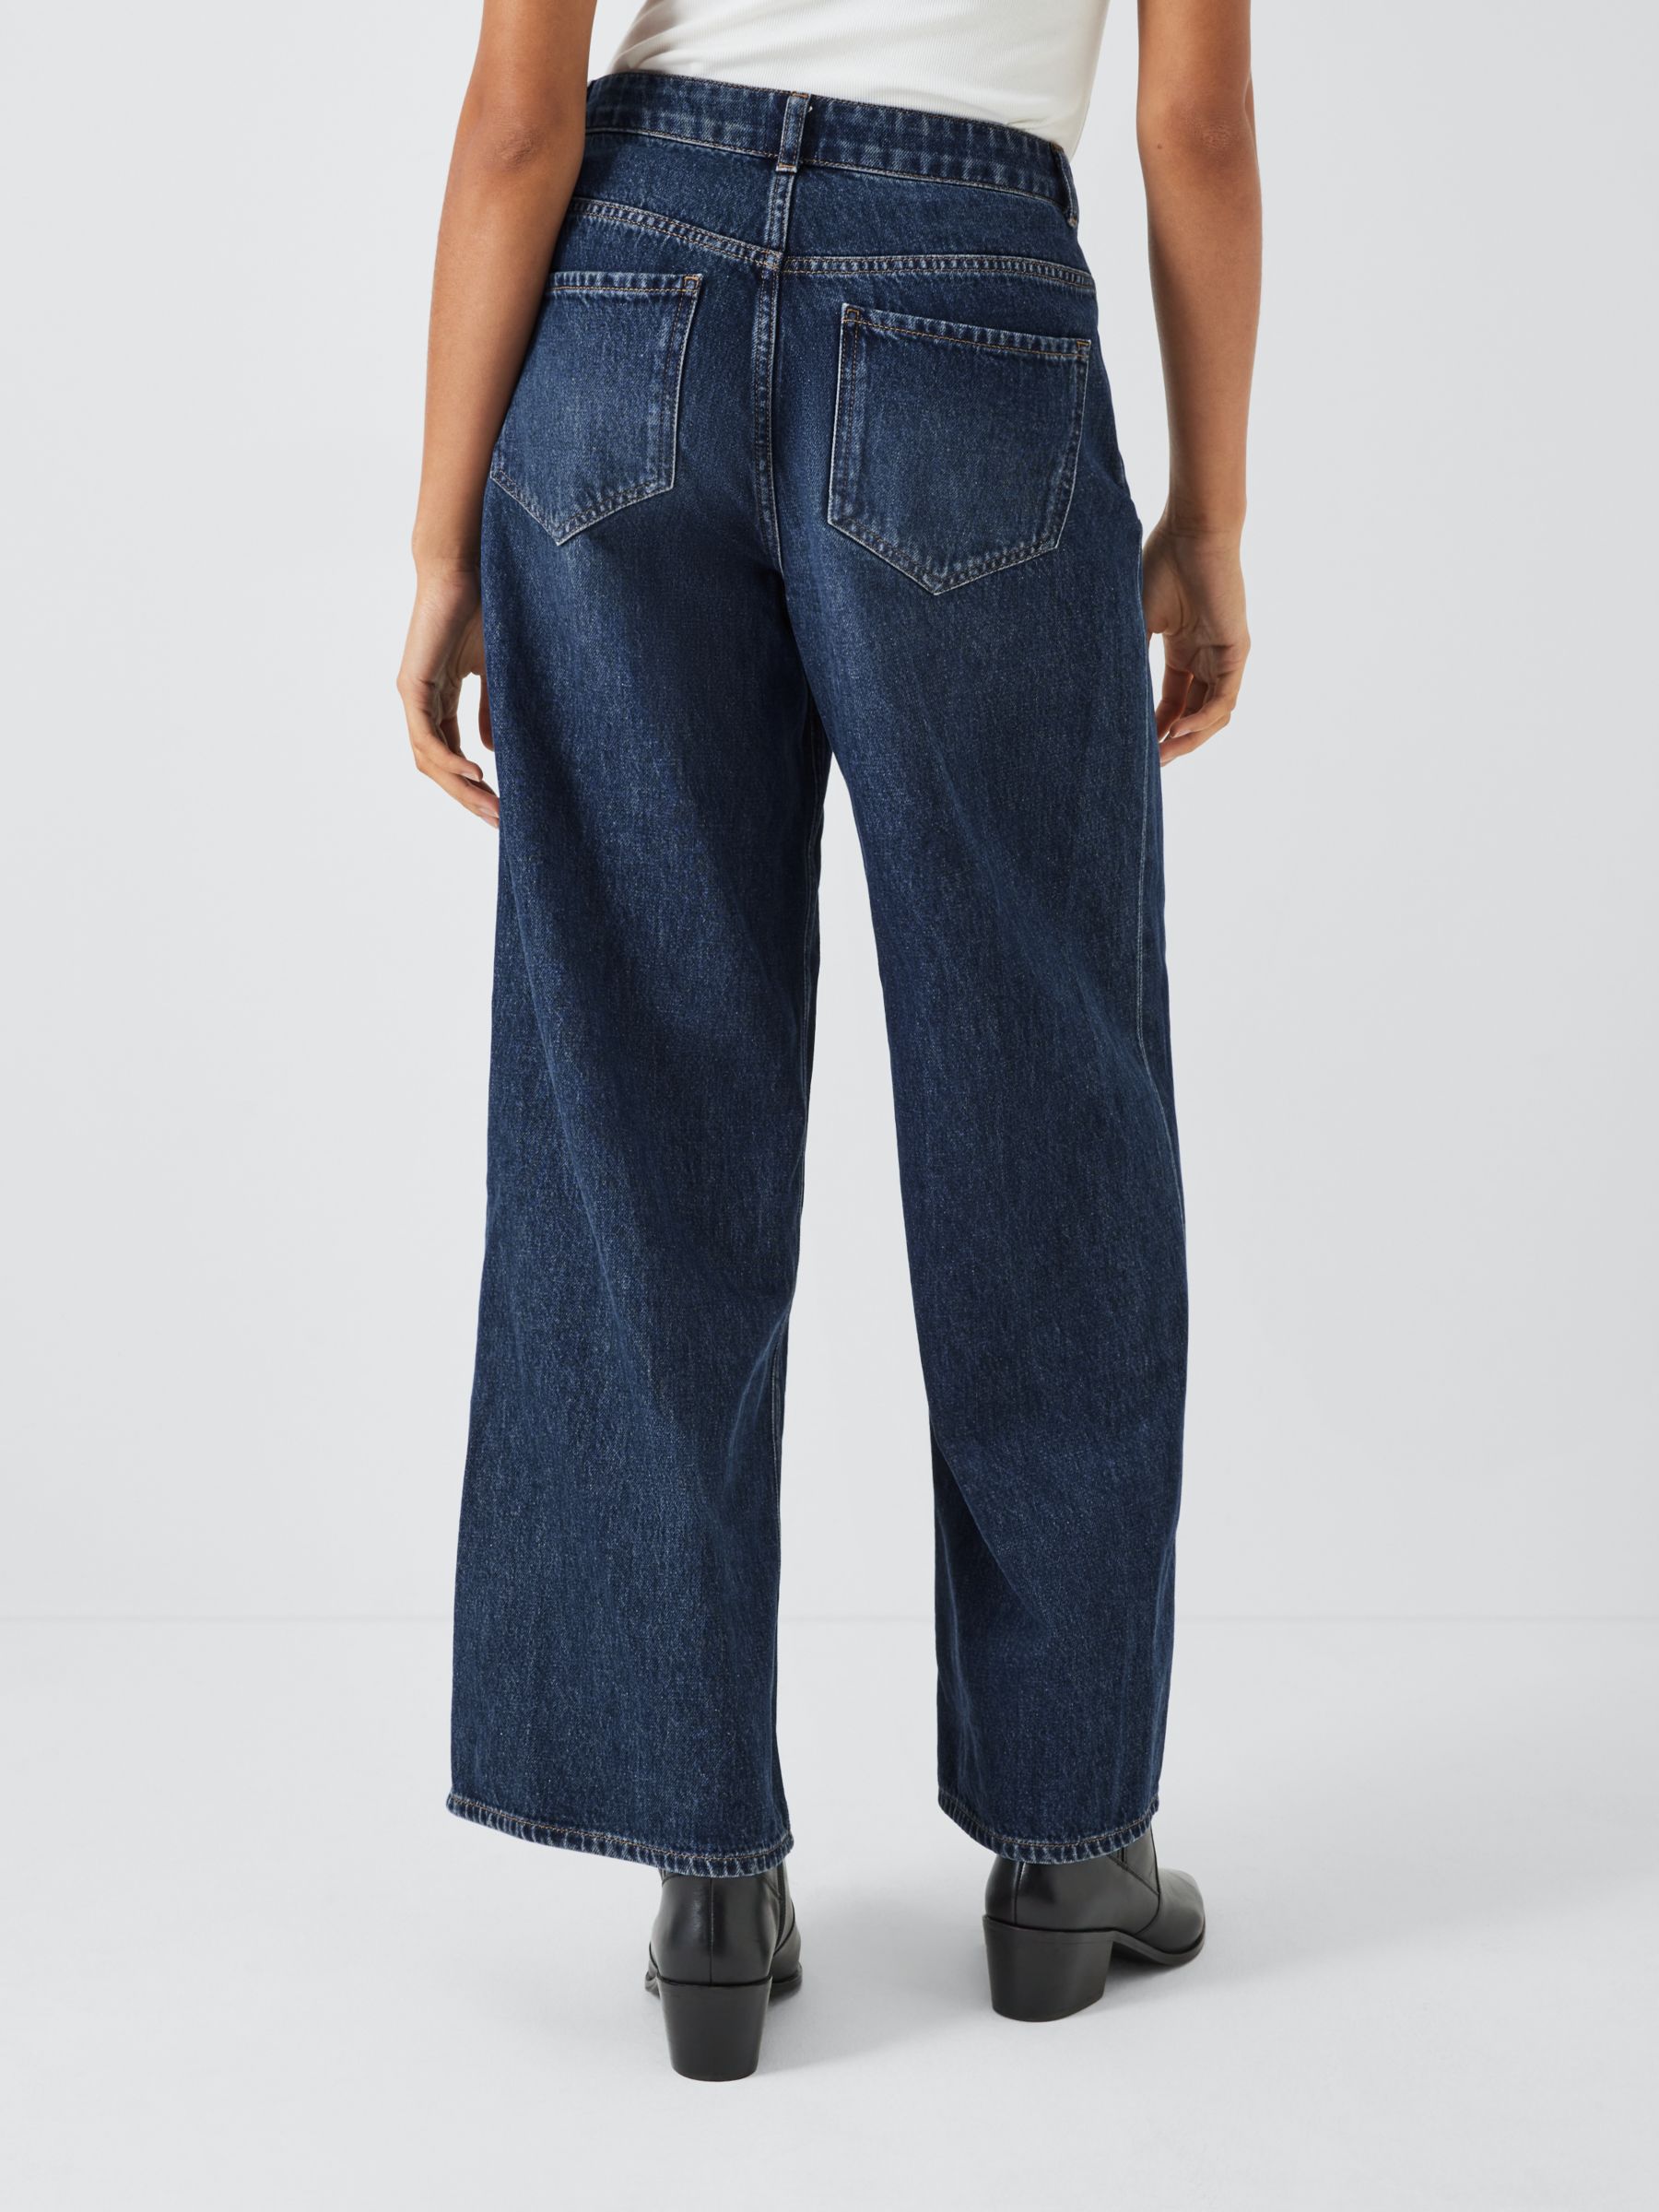 AND/OR Westlake Rigid Wide Leg Jeans, Dark Blue Wash, 34R